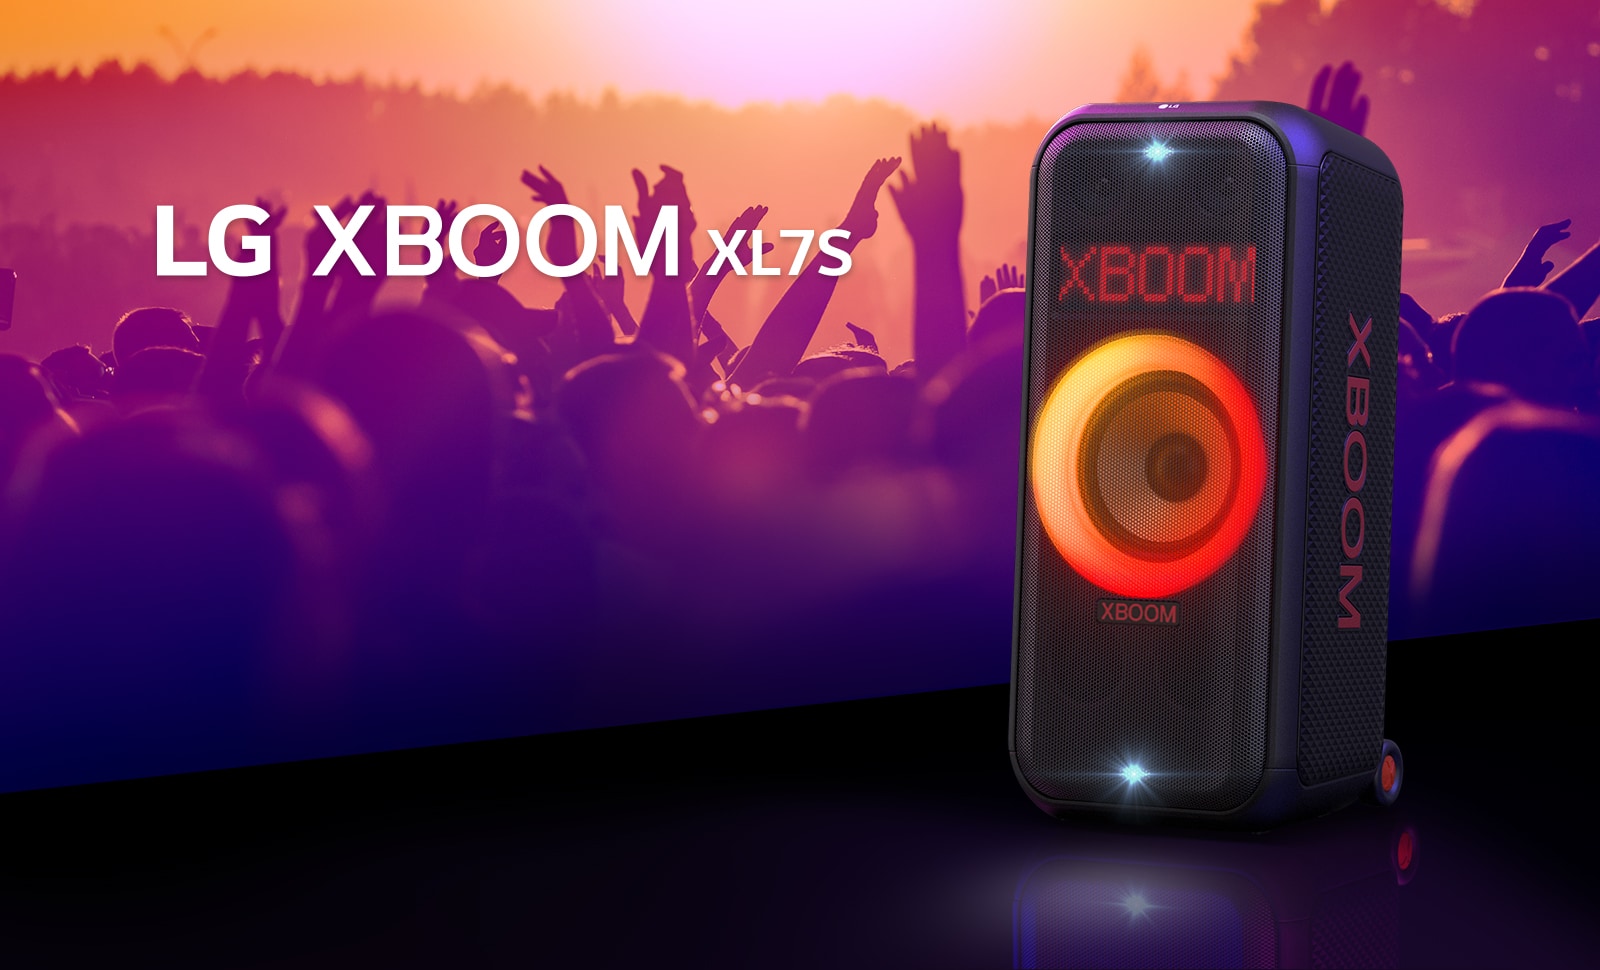 LG XBOOM XL7S nalazi se na bini s osvetljenjem koje postepeno prelazi iz crvene u narandžastu boju. Iza bine ljudi uživaju u muzici.